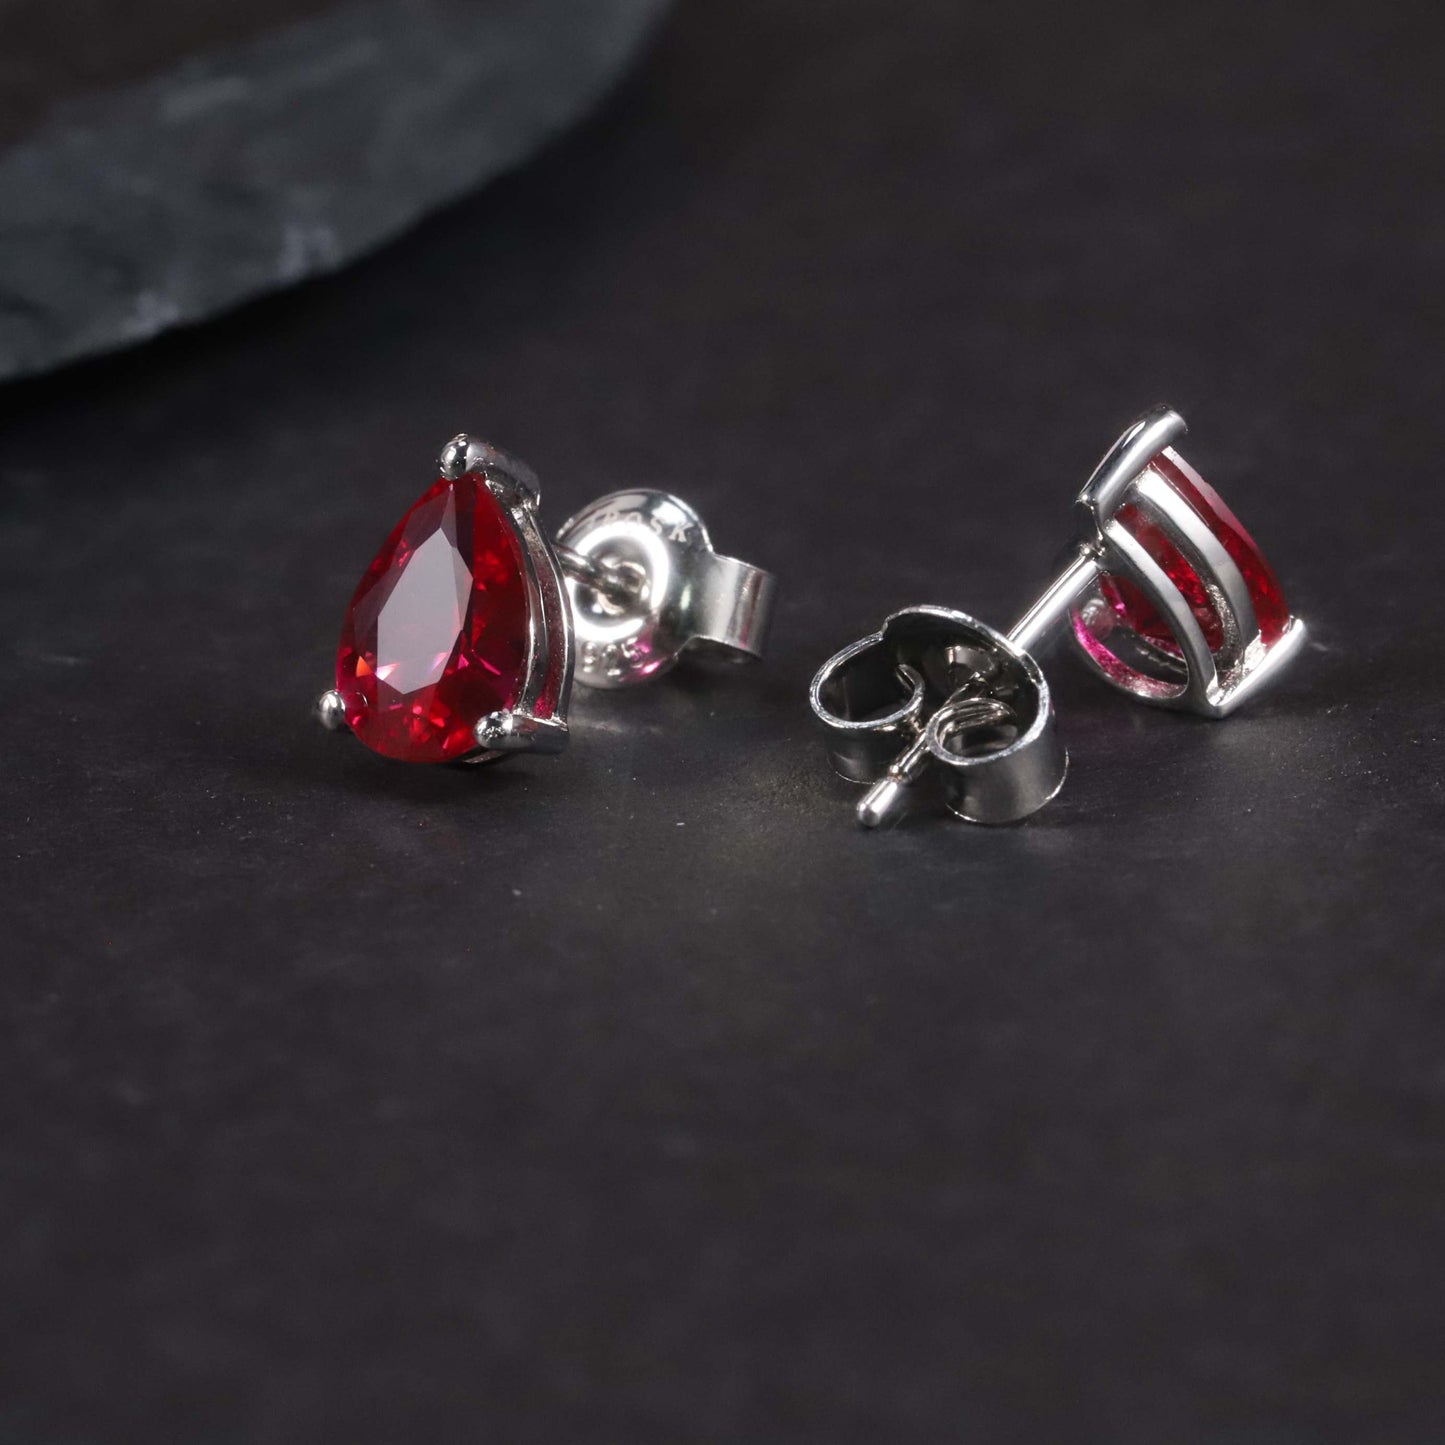 Pear Cut Stud Earrings in Sterling Silver - Ruby